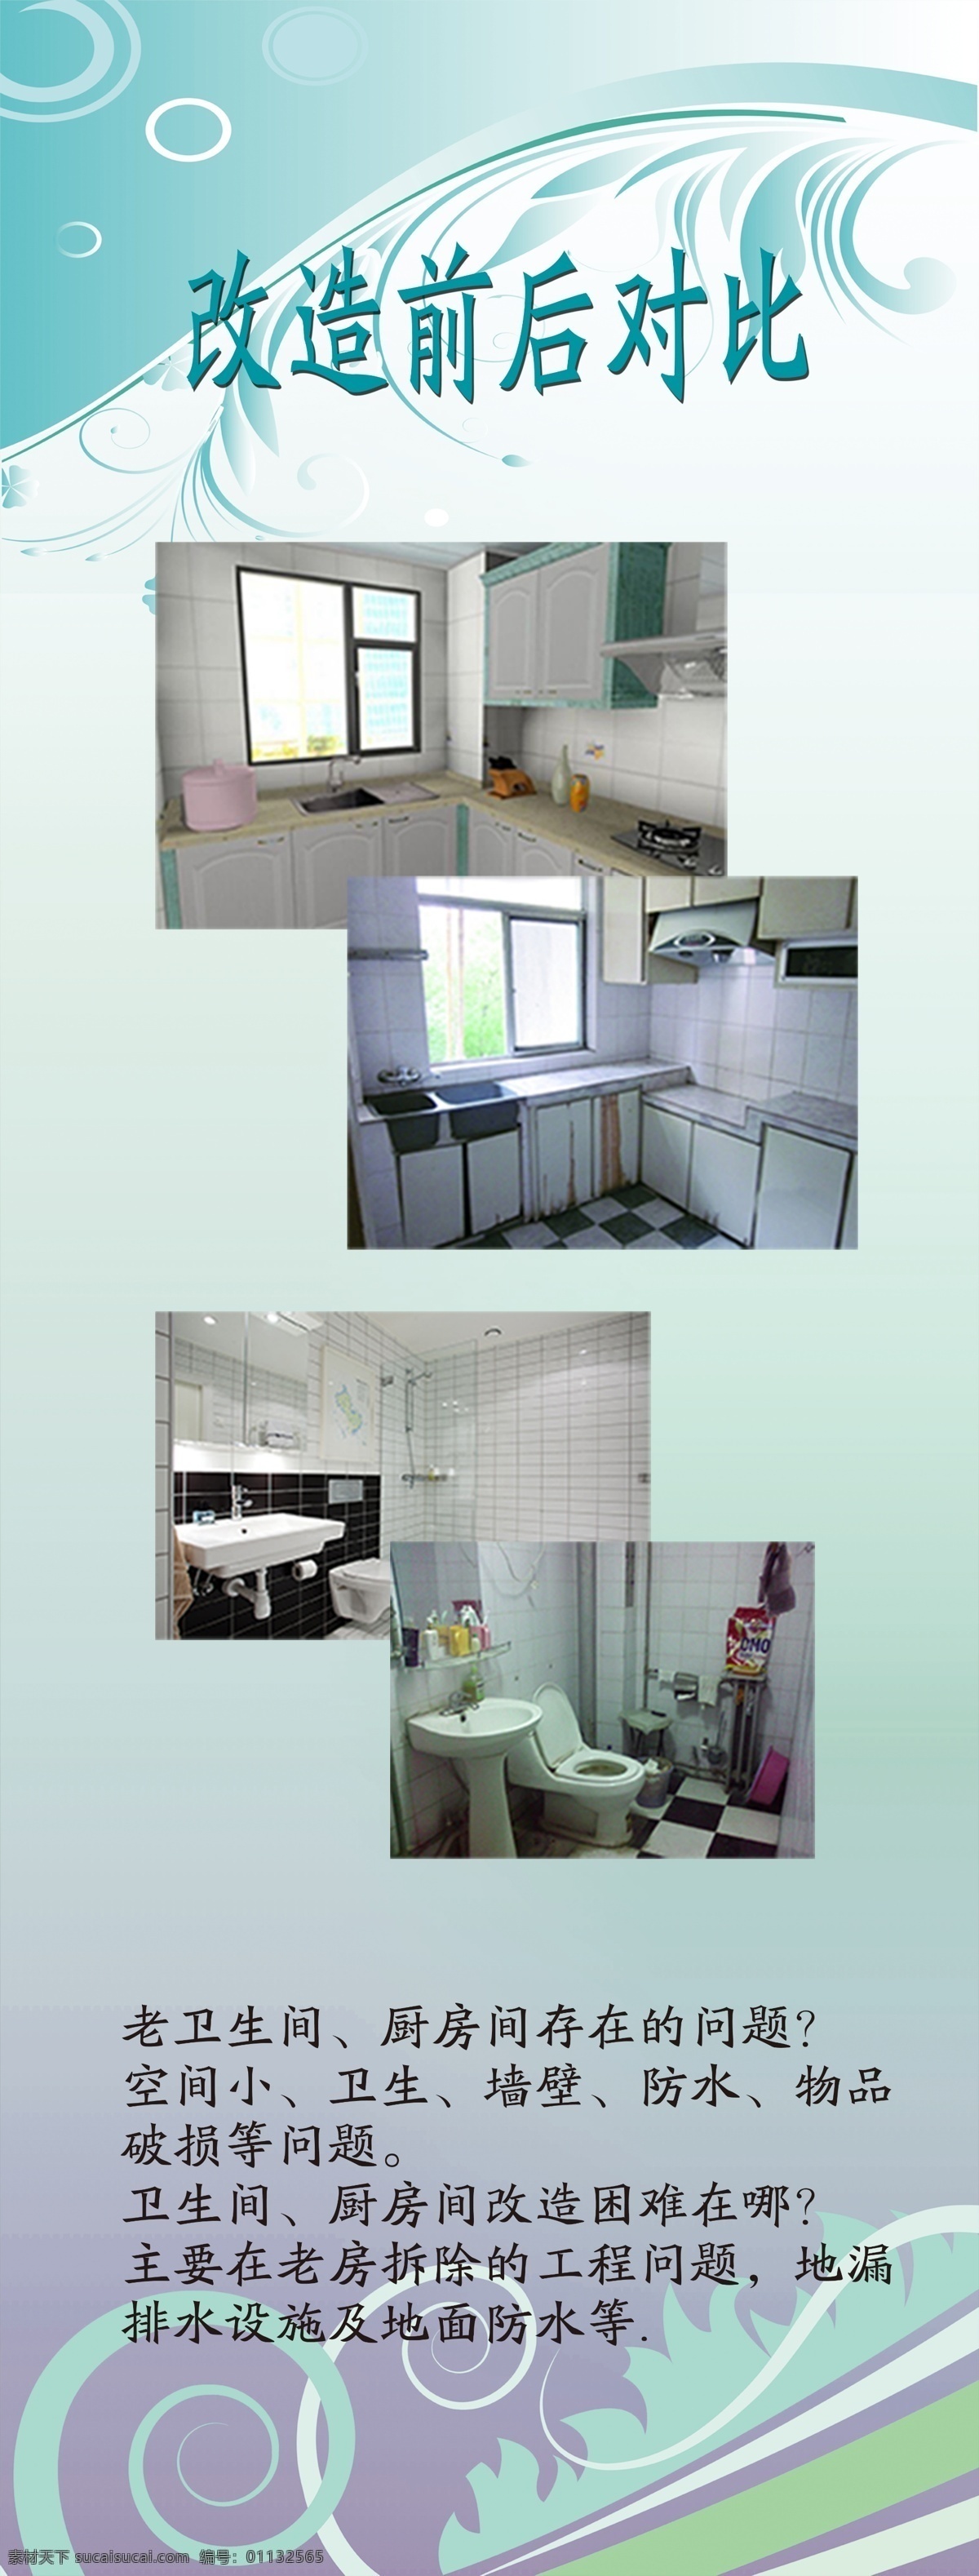 卫生间 厨房 改造 前后 对比 图 展架 家装 对比图 卫生间厨房 白色